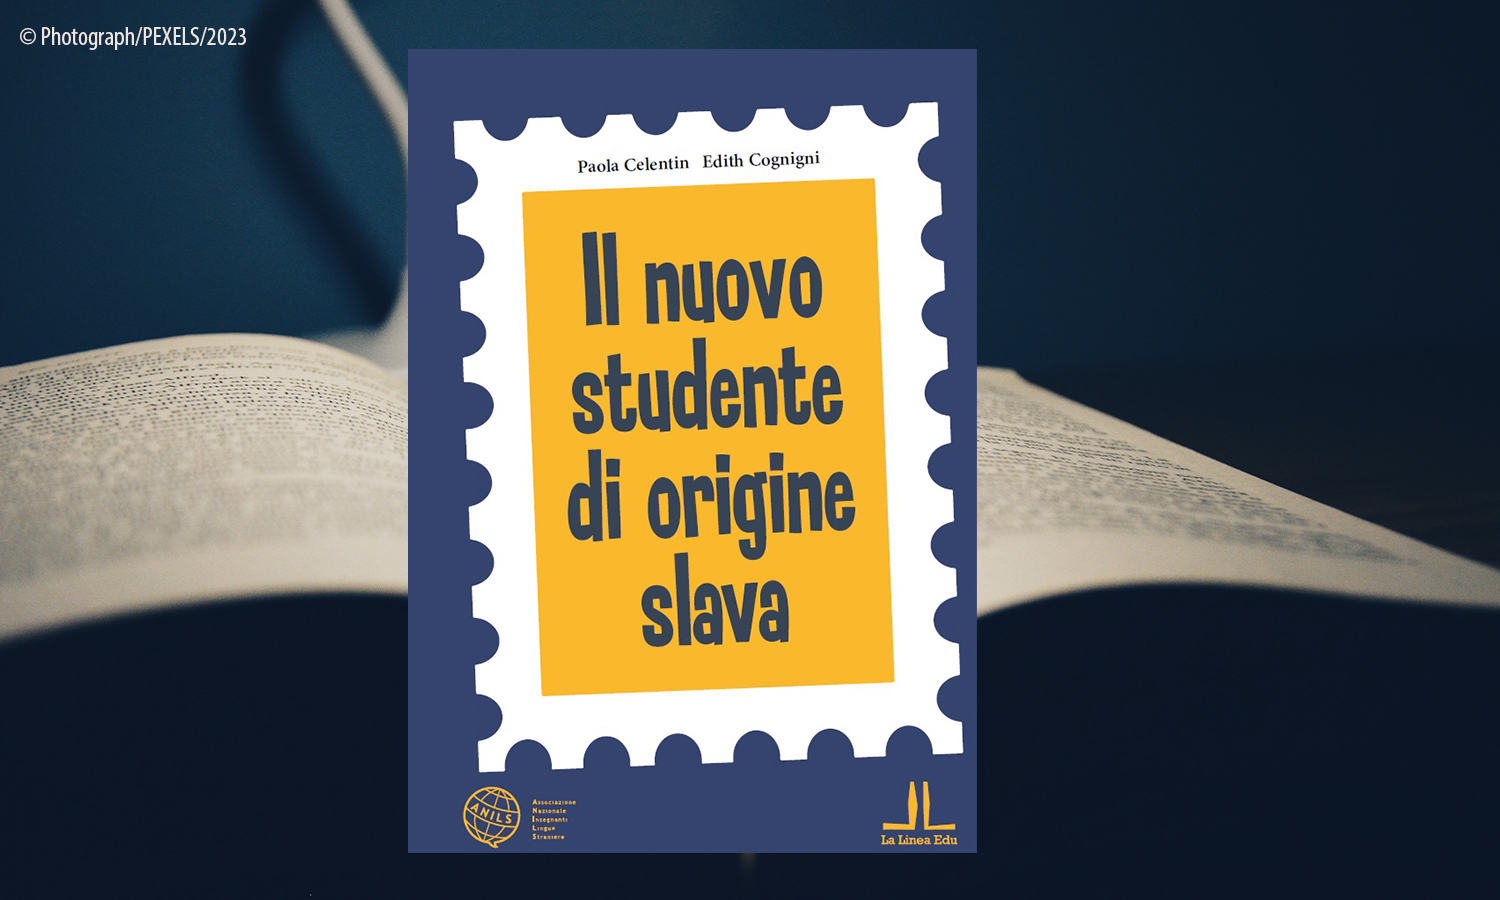 Presentazione del nuovo corso “IL NUOVO STUDENTE DI ORIGINE SLAVA”, di Paola Celentin, Edith Cognigni